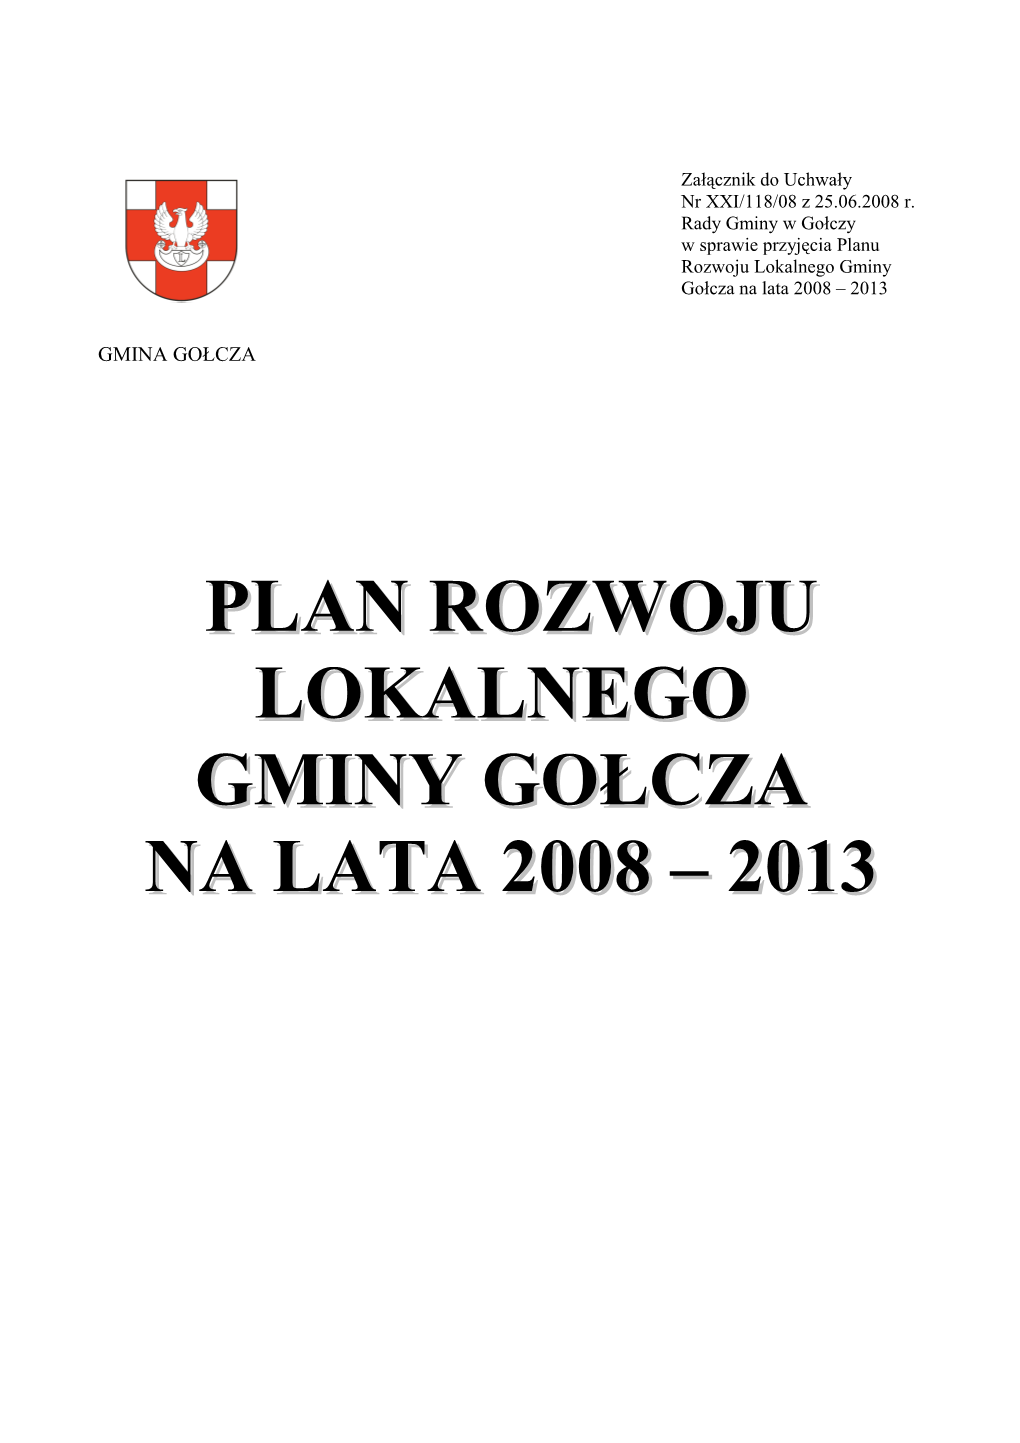 Plan Rozwoju Lokalnego Gminy Gołcza Na Lata 2008 - 2013